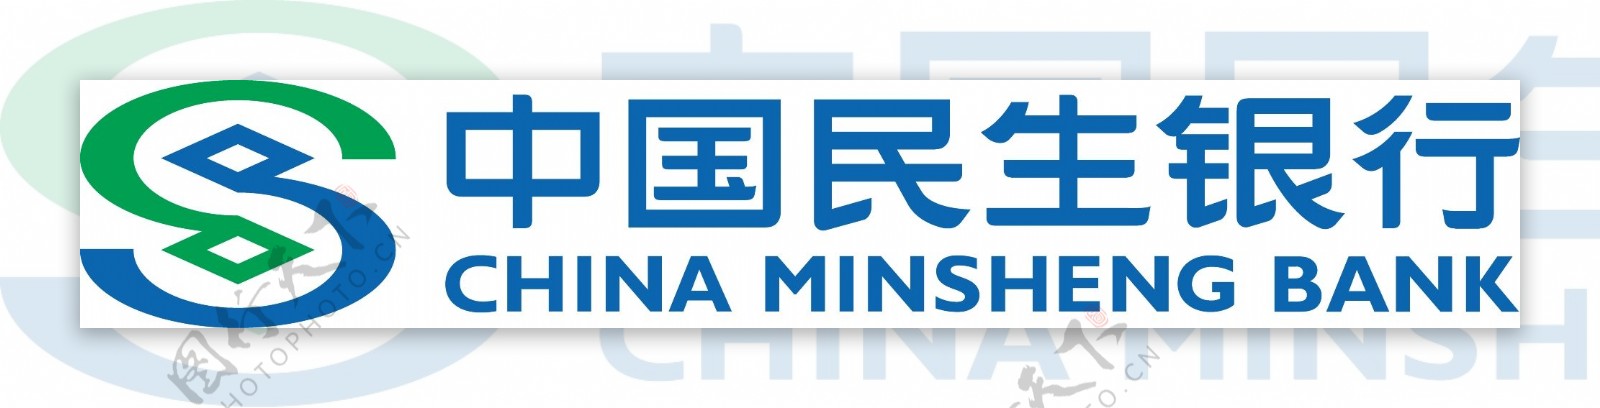 中国民生银行新标志图片